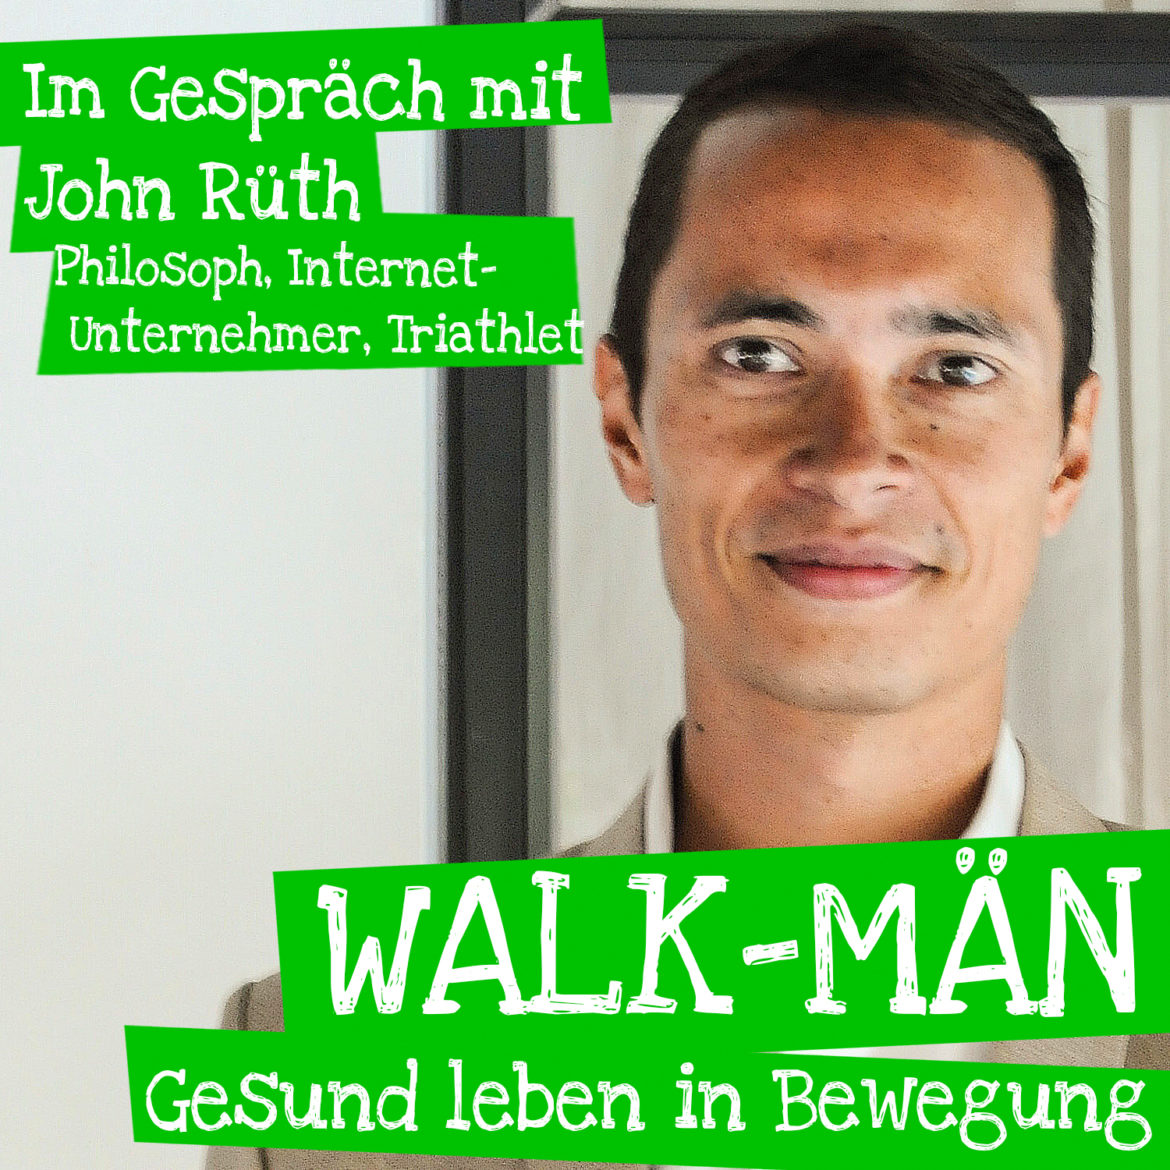 Online: Episode 46 des Walk-Män“-Podcasts – diesmal mit Unternehmer John Rüth